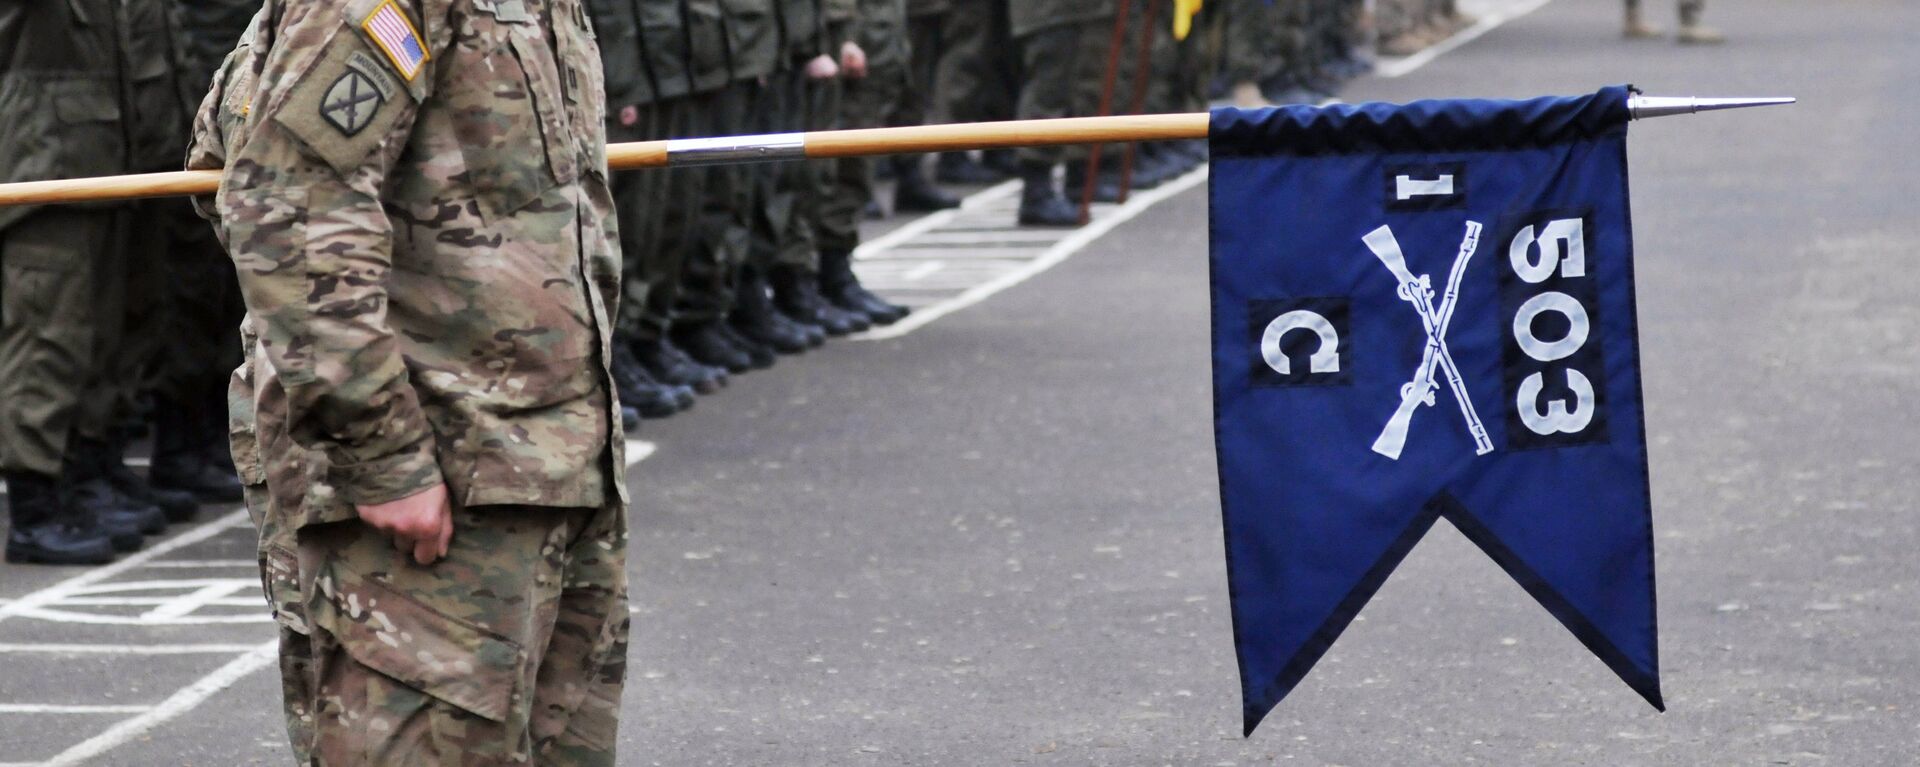 'Korkusuz Gardiyan' adlı tatbikat kapsamında Amerikan askerleri, Lviv'de Ukrayna Ulusal Tugayı'na bağlı birlikleri eğitiyor. - Sputnik Türkiye, 1920, 27.06.2021